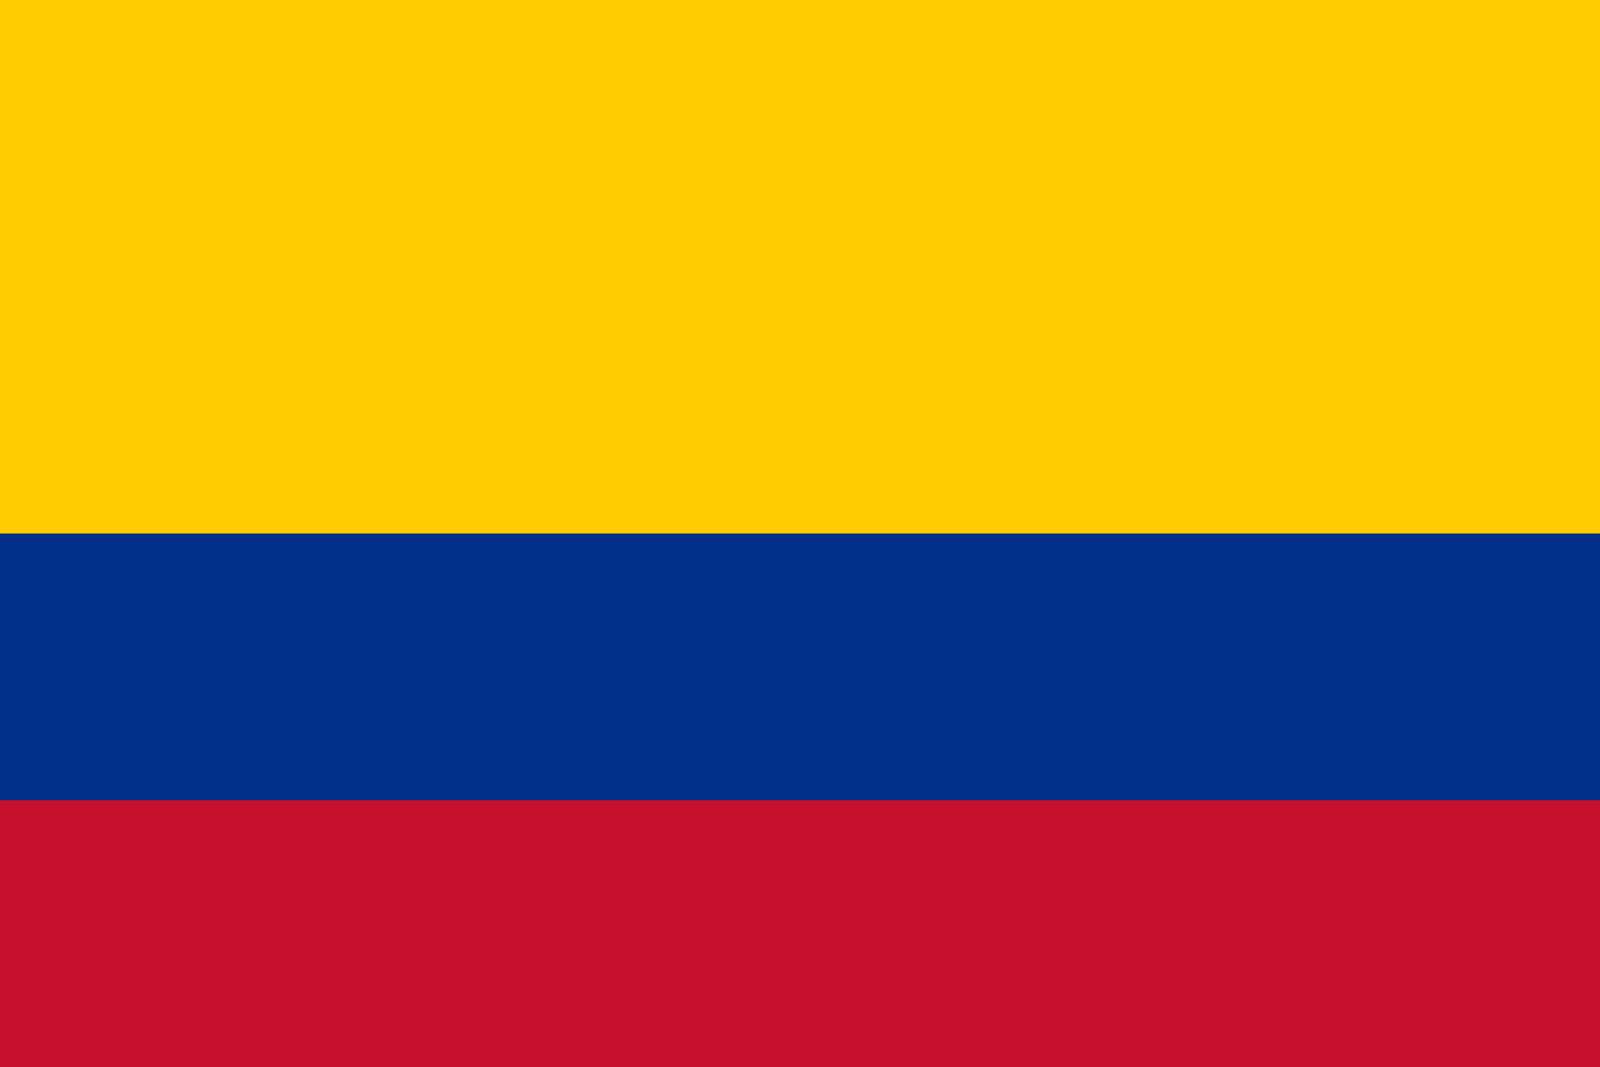 Kolumbia puzzle online